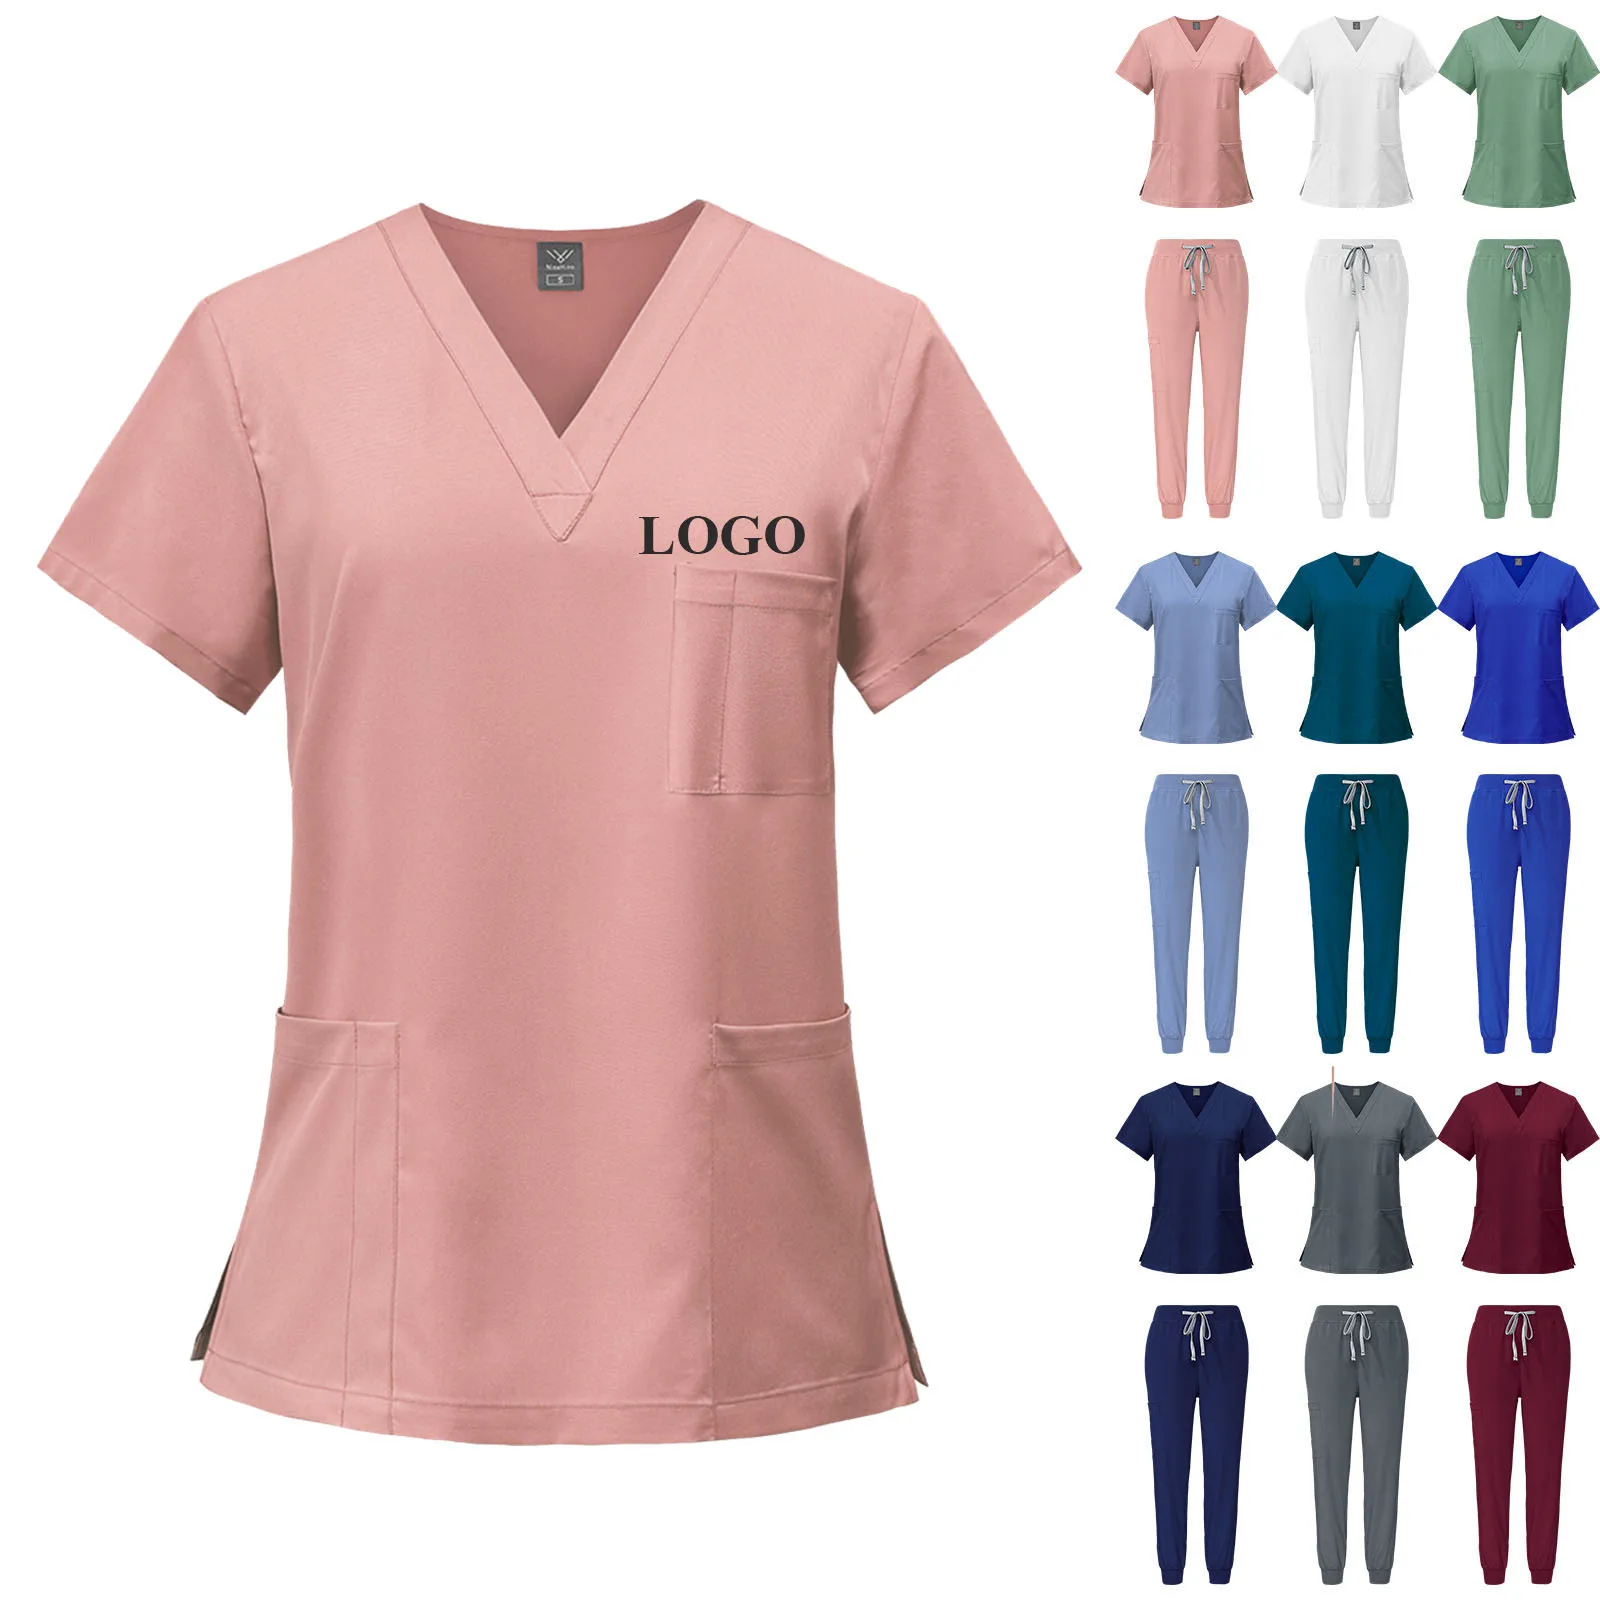 유니섹스 화이트 병원 유니폼, 간호사 뷰티 치과 살롱 작업복, 맞춤형 로고 유니폼, 의료 스크럽 조거 세트, 패션